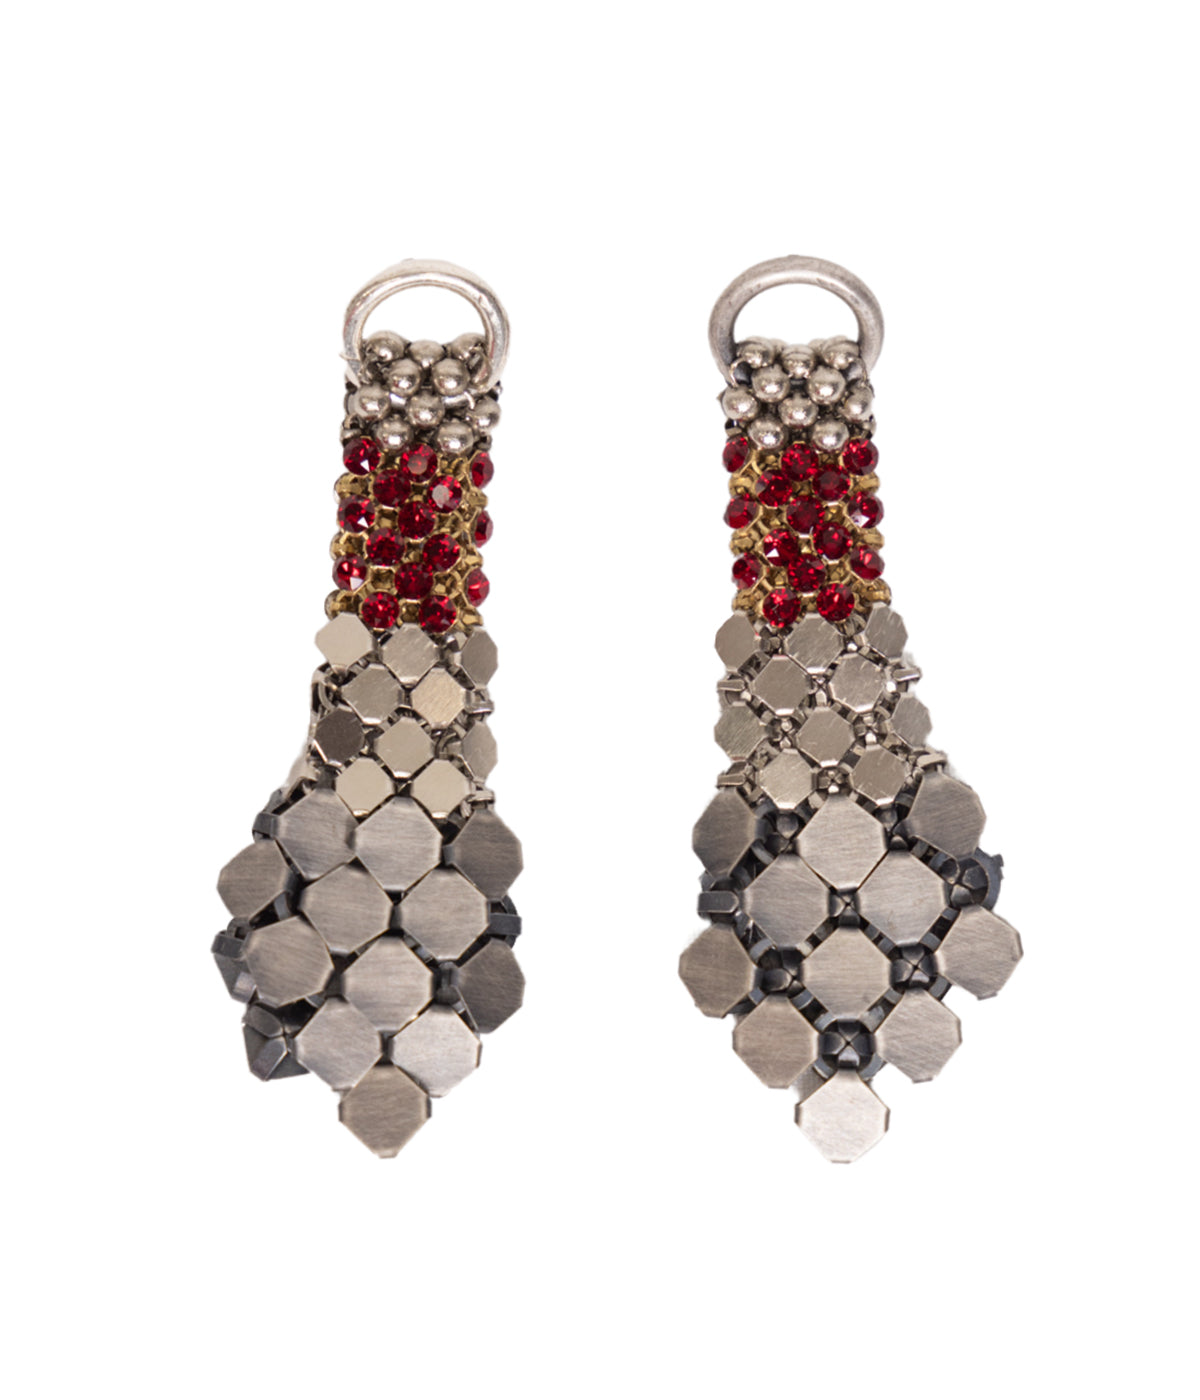 Sophie Earrings in Silver & Red